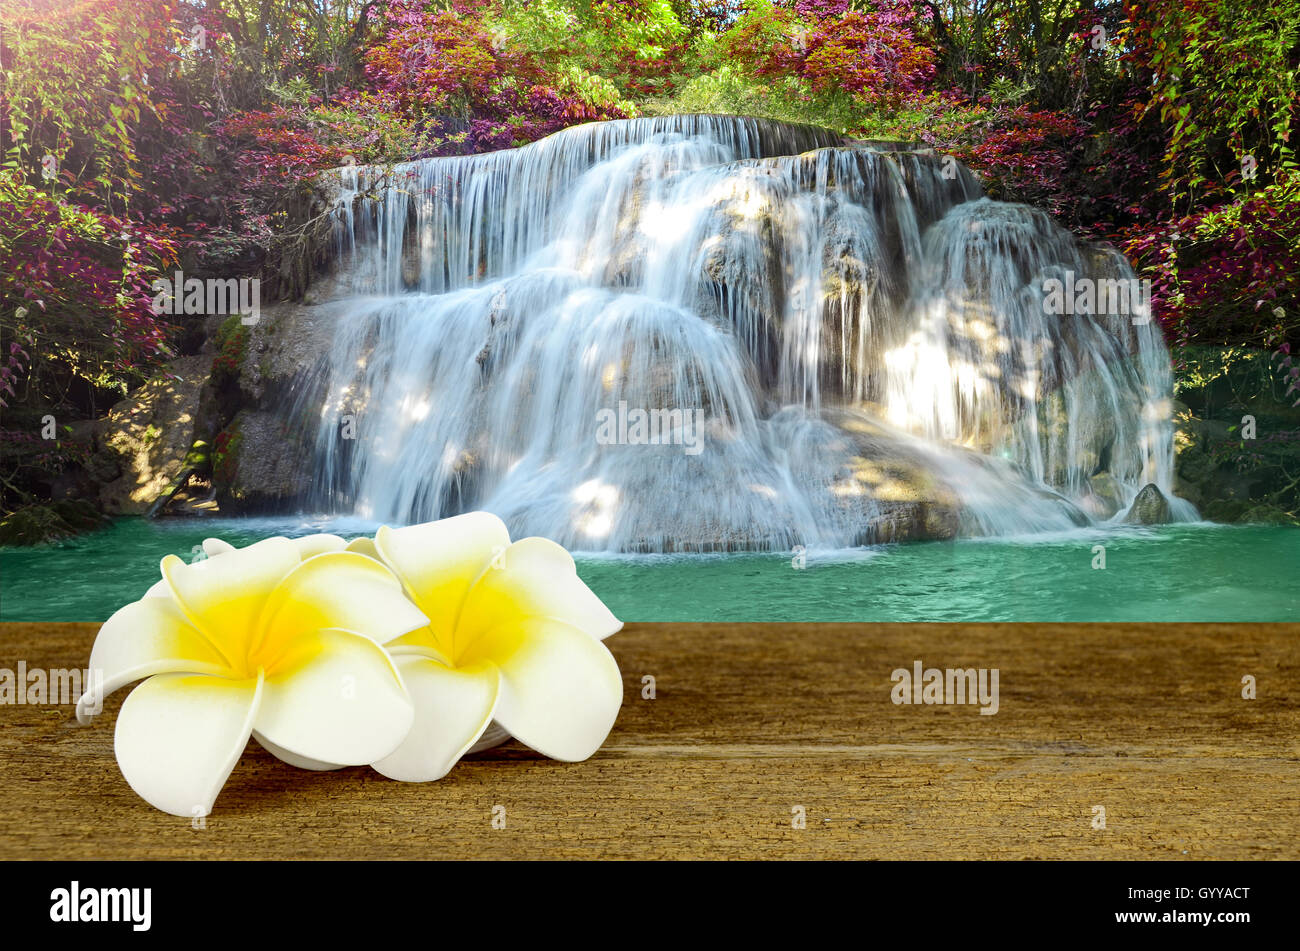 Belle cascade de pittoresque avec forêt d'automne avec blanc et jaune Plumeria flower sur le vieux bois table. Banque D'Images